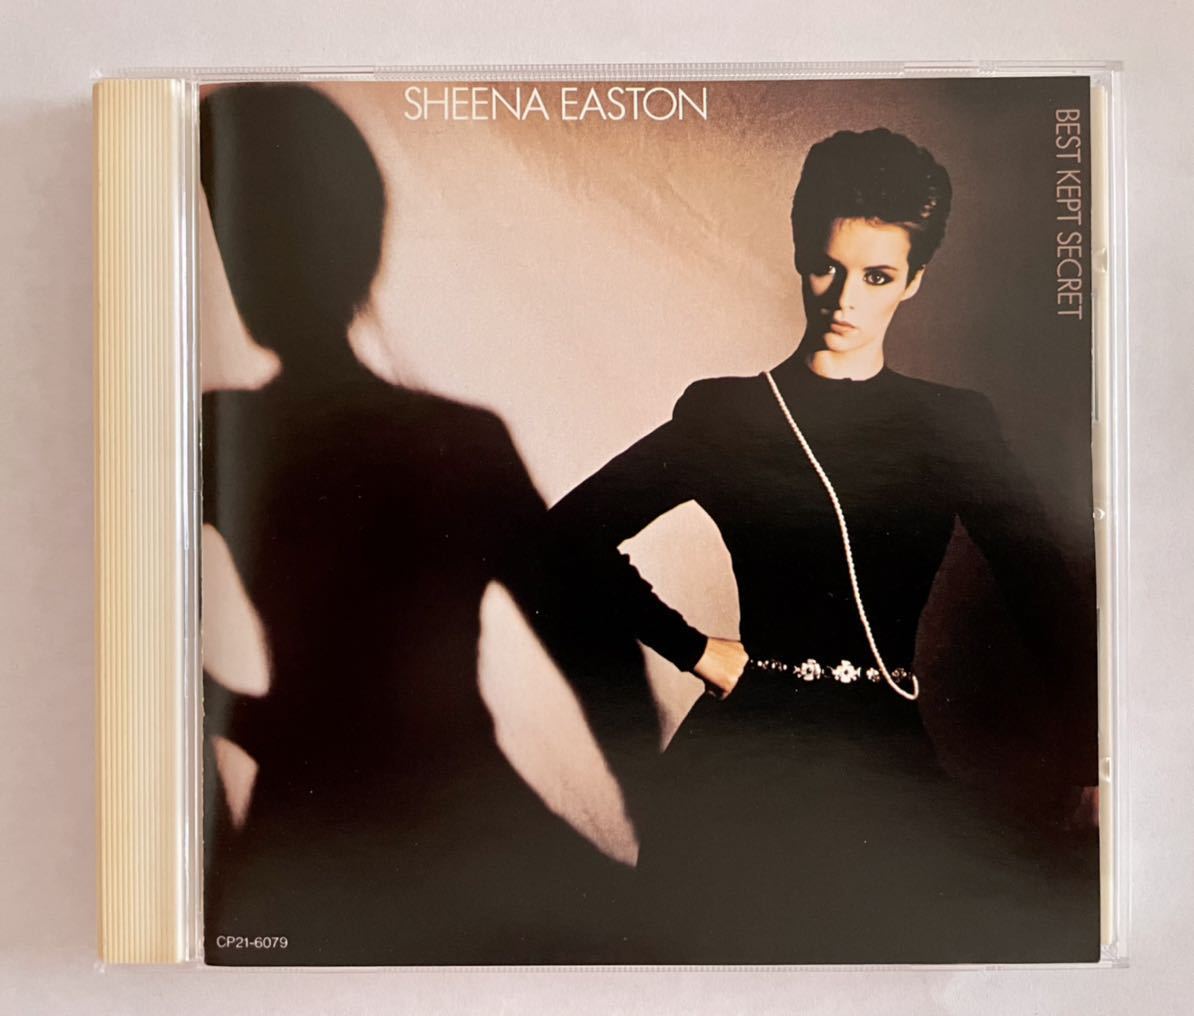 シーナ・イーストン「秘密」Sheena Easton 「Best kept secret 」国内盤CD_画像1